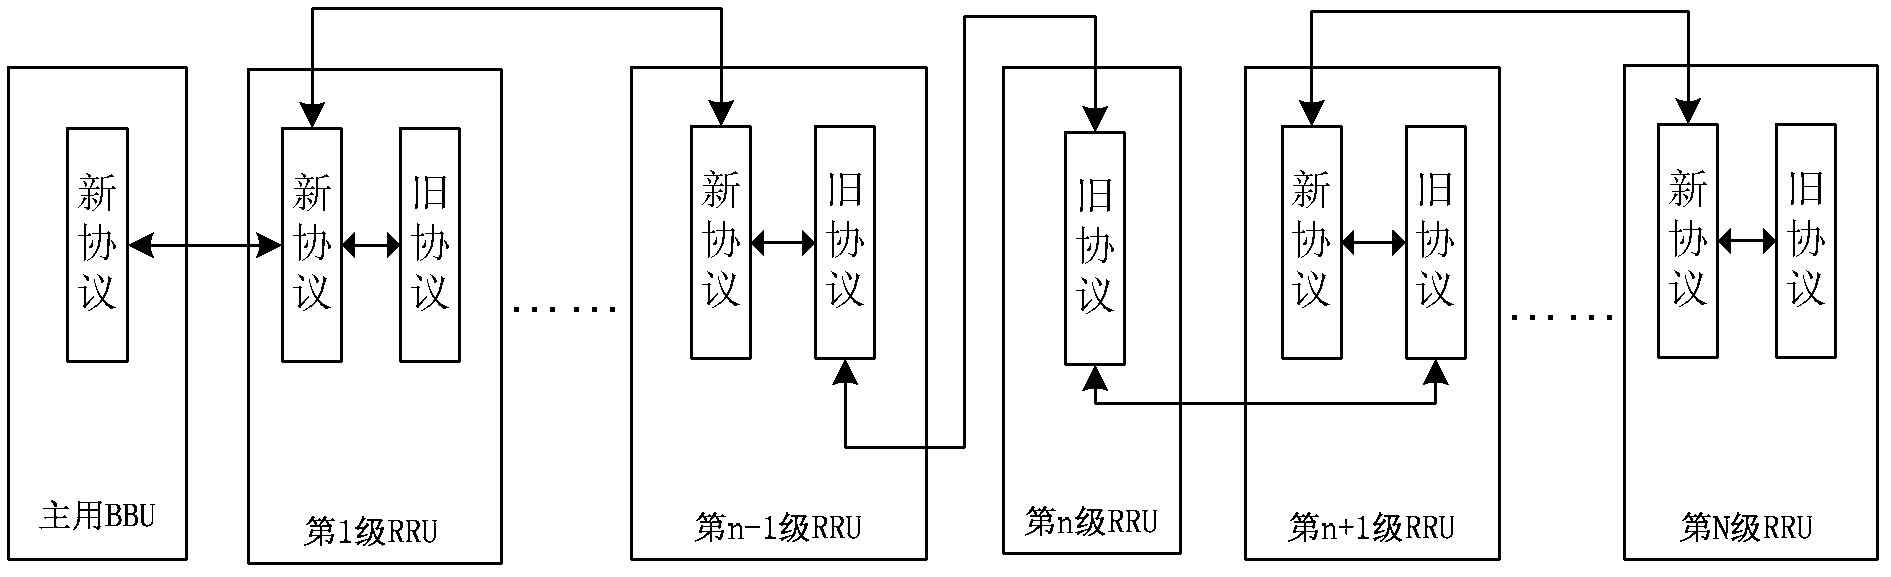 Communication method of BBU (Building Base band Unit) and RRU (Radio Remote Unit) and base station